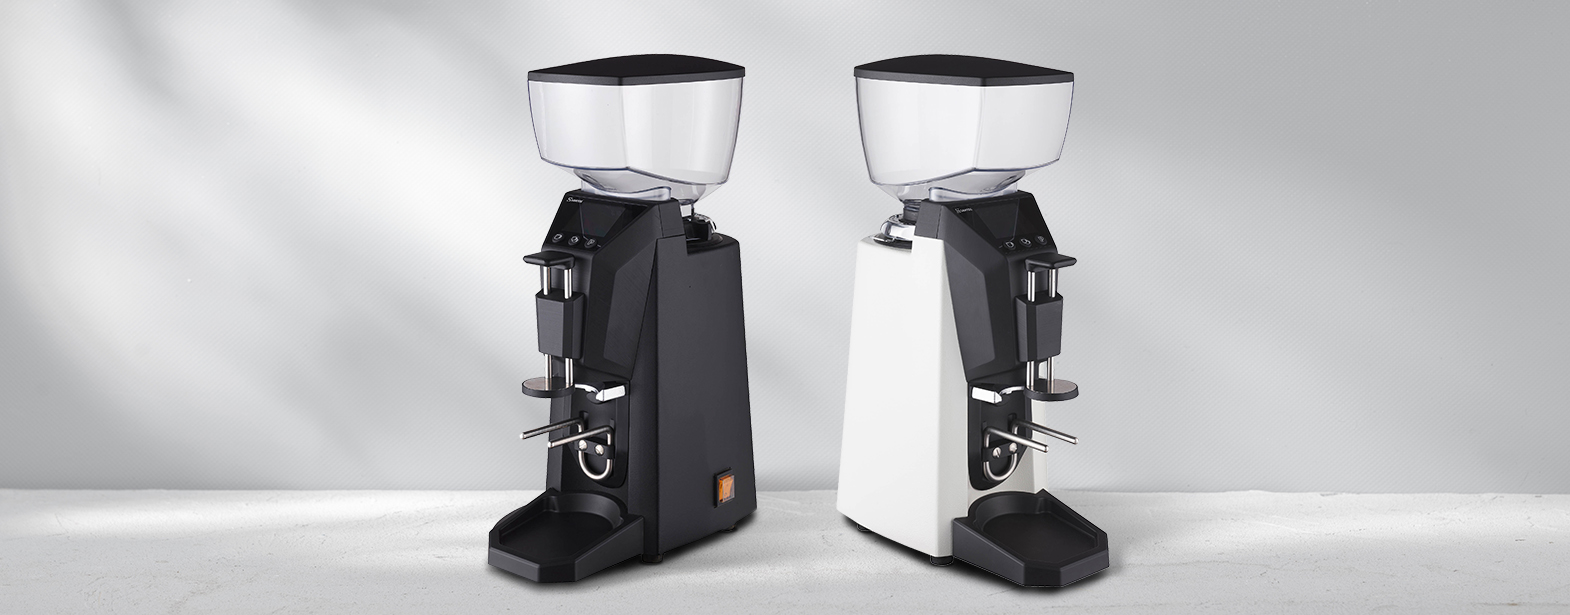 Ce grinder permet d'obtenir un café frais pour une ou deux personne en moins d'une seconde.